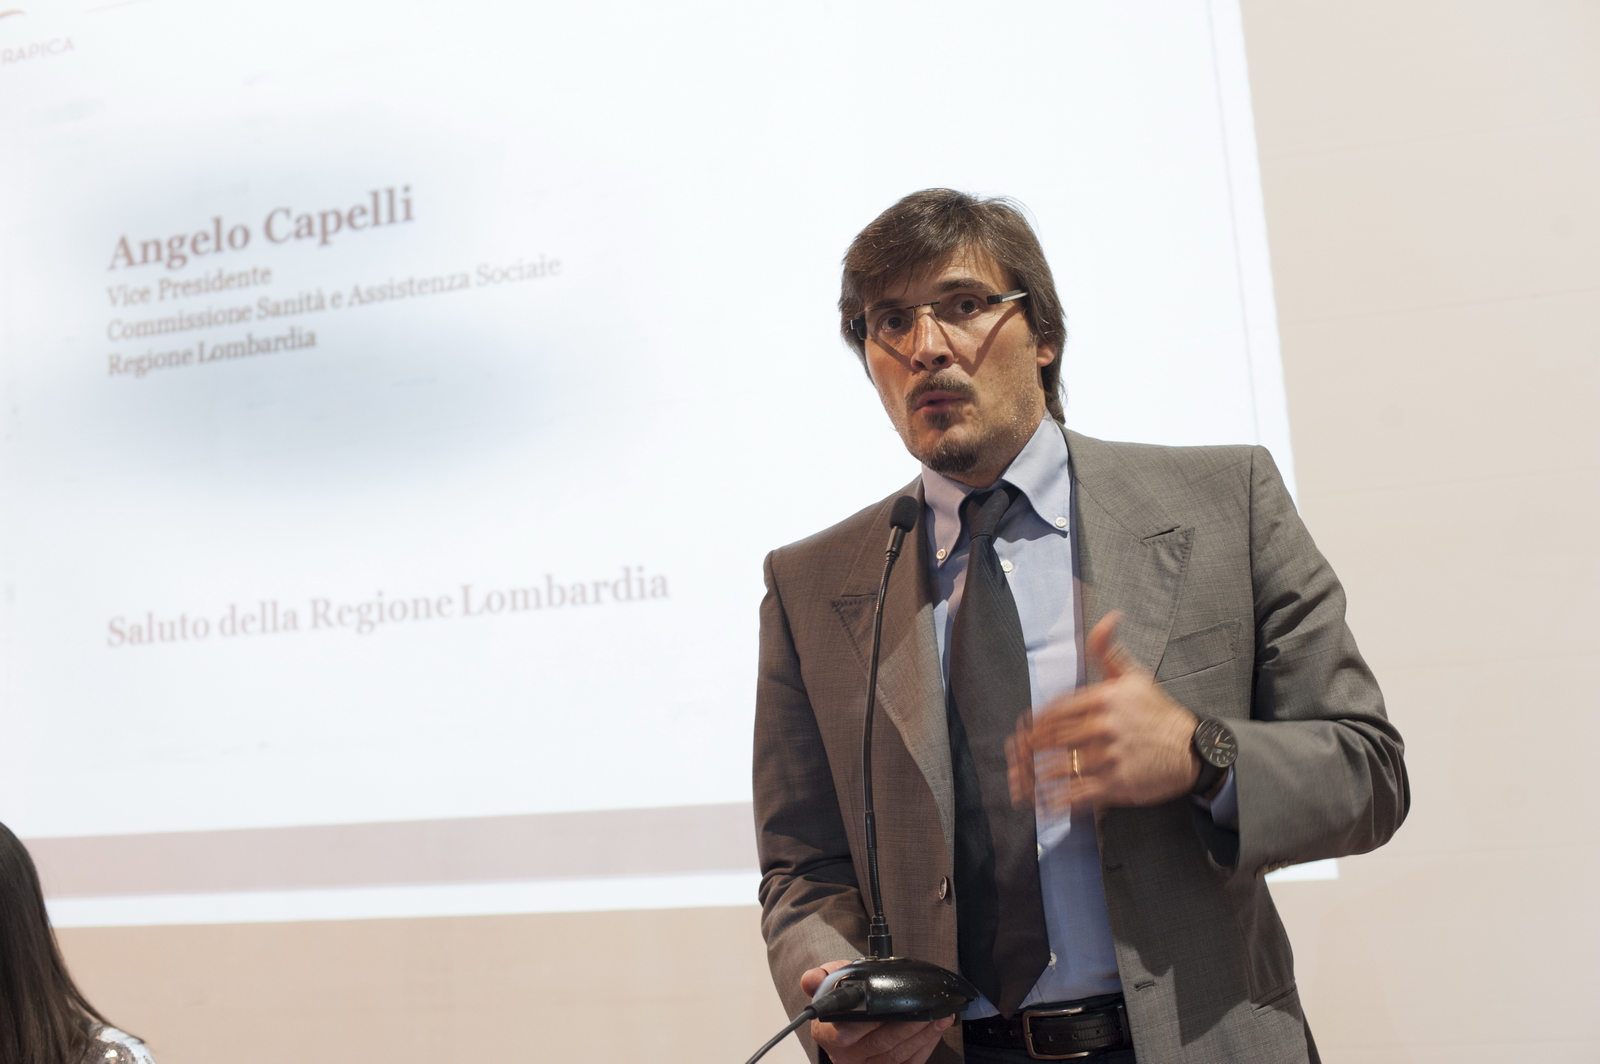 28.6.2013 Interviene Angelo Capelli, Vice Presidente Commissione Sanità, Regione Lombardia  (2)